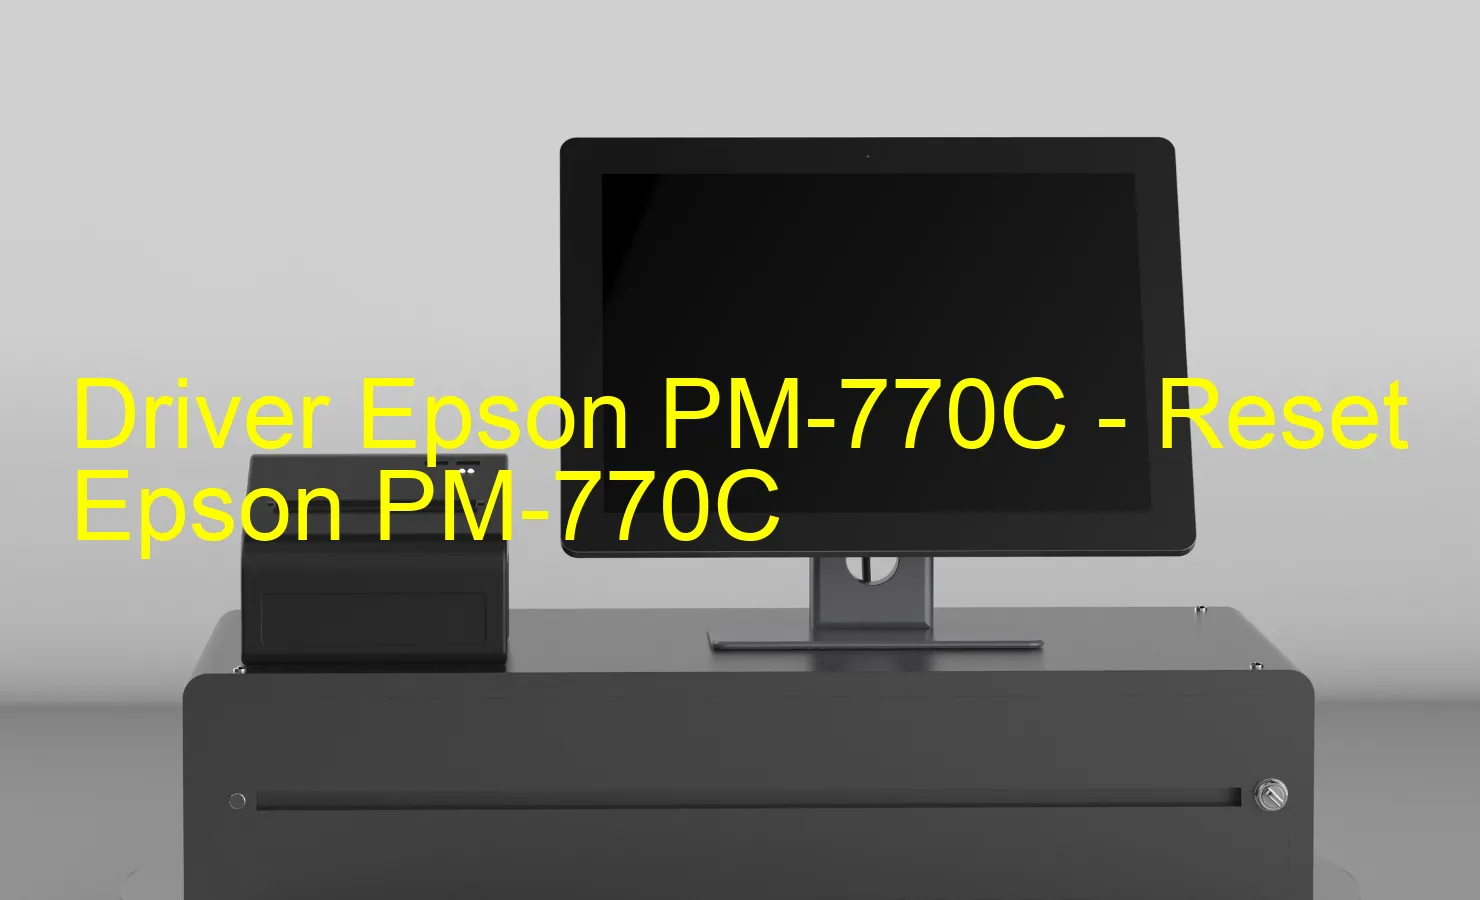 Epson PM-770Cのドライバー、Epson PM-770Cのリセットソフトウェア